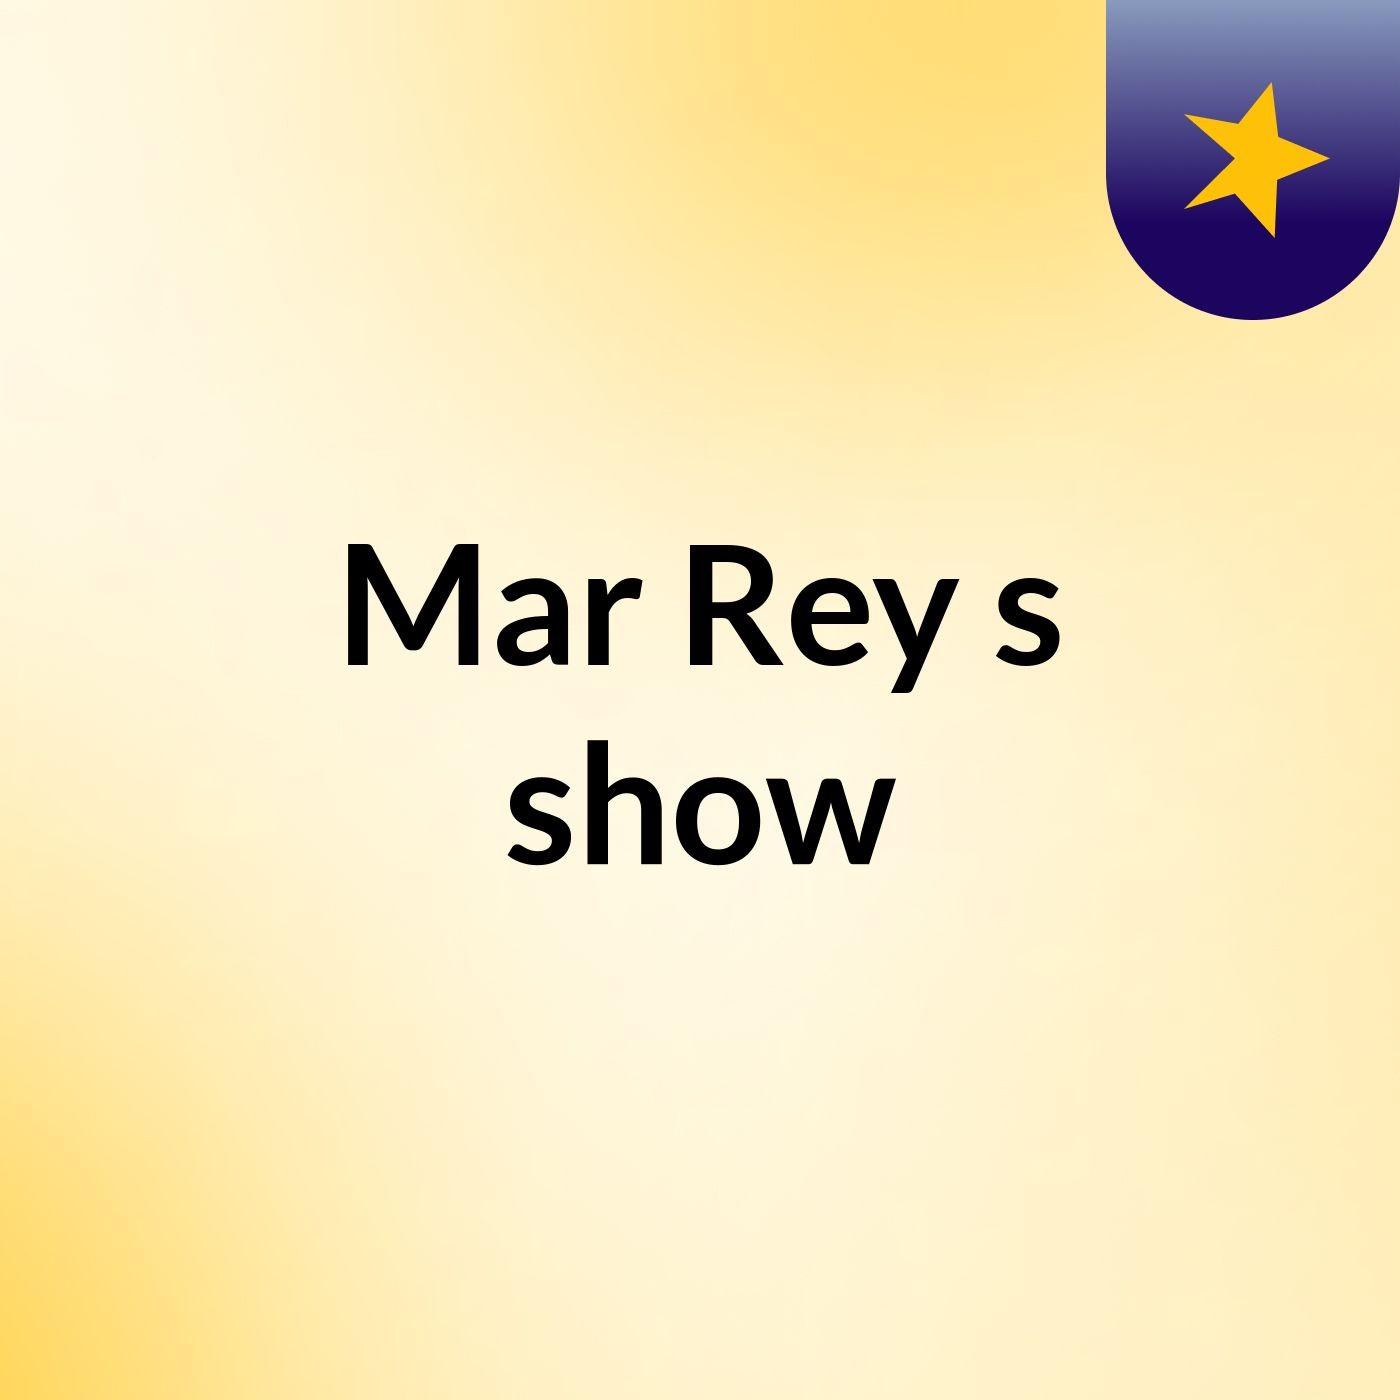 Mar Rey's show